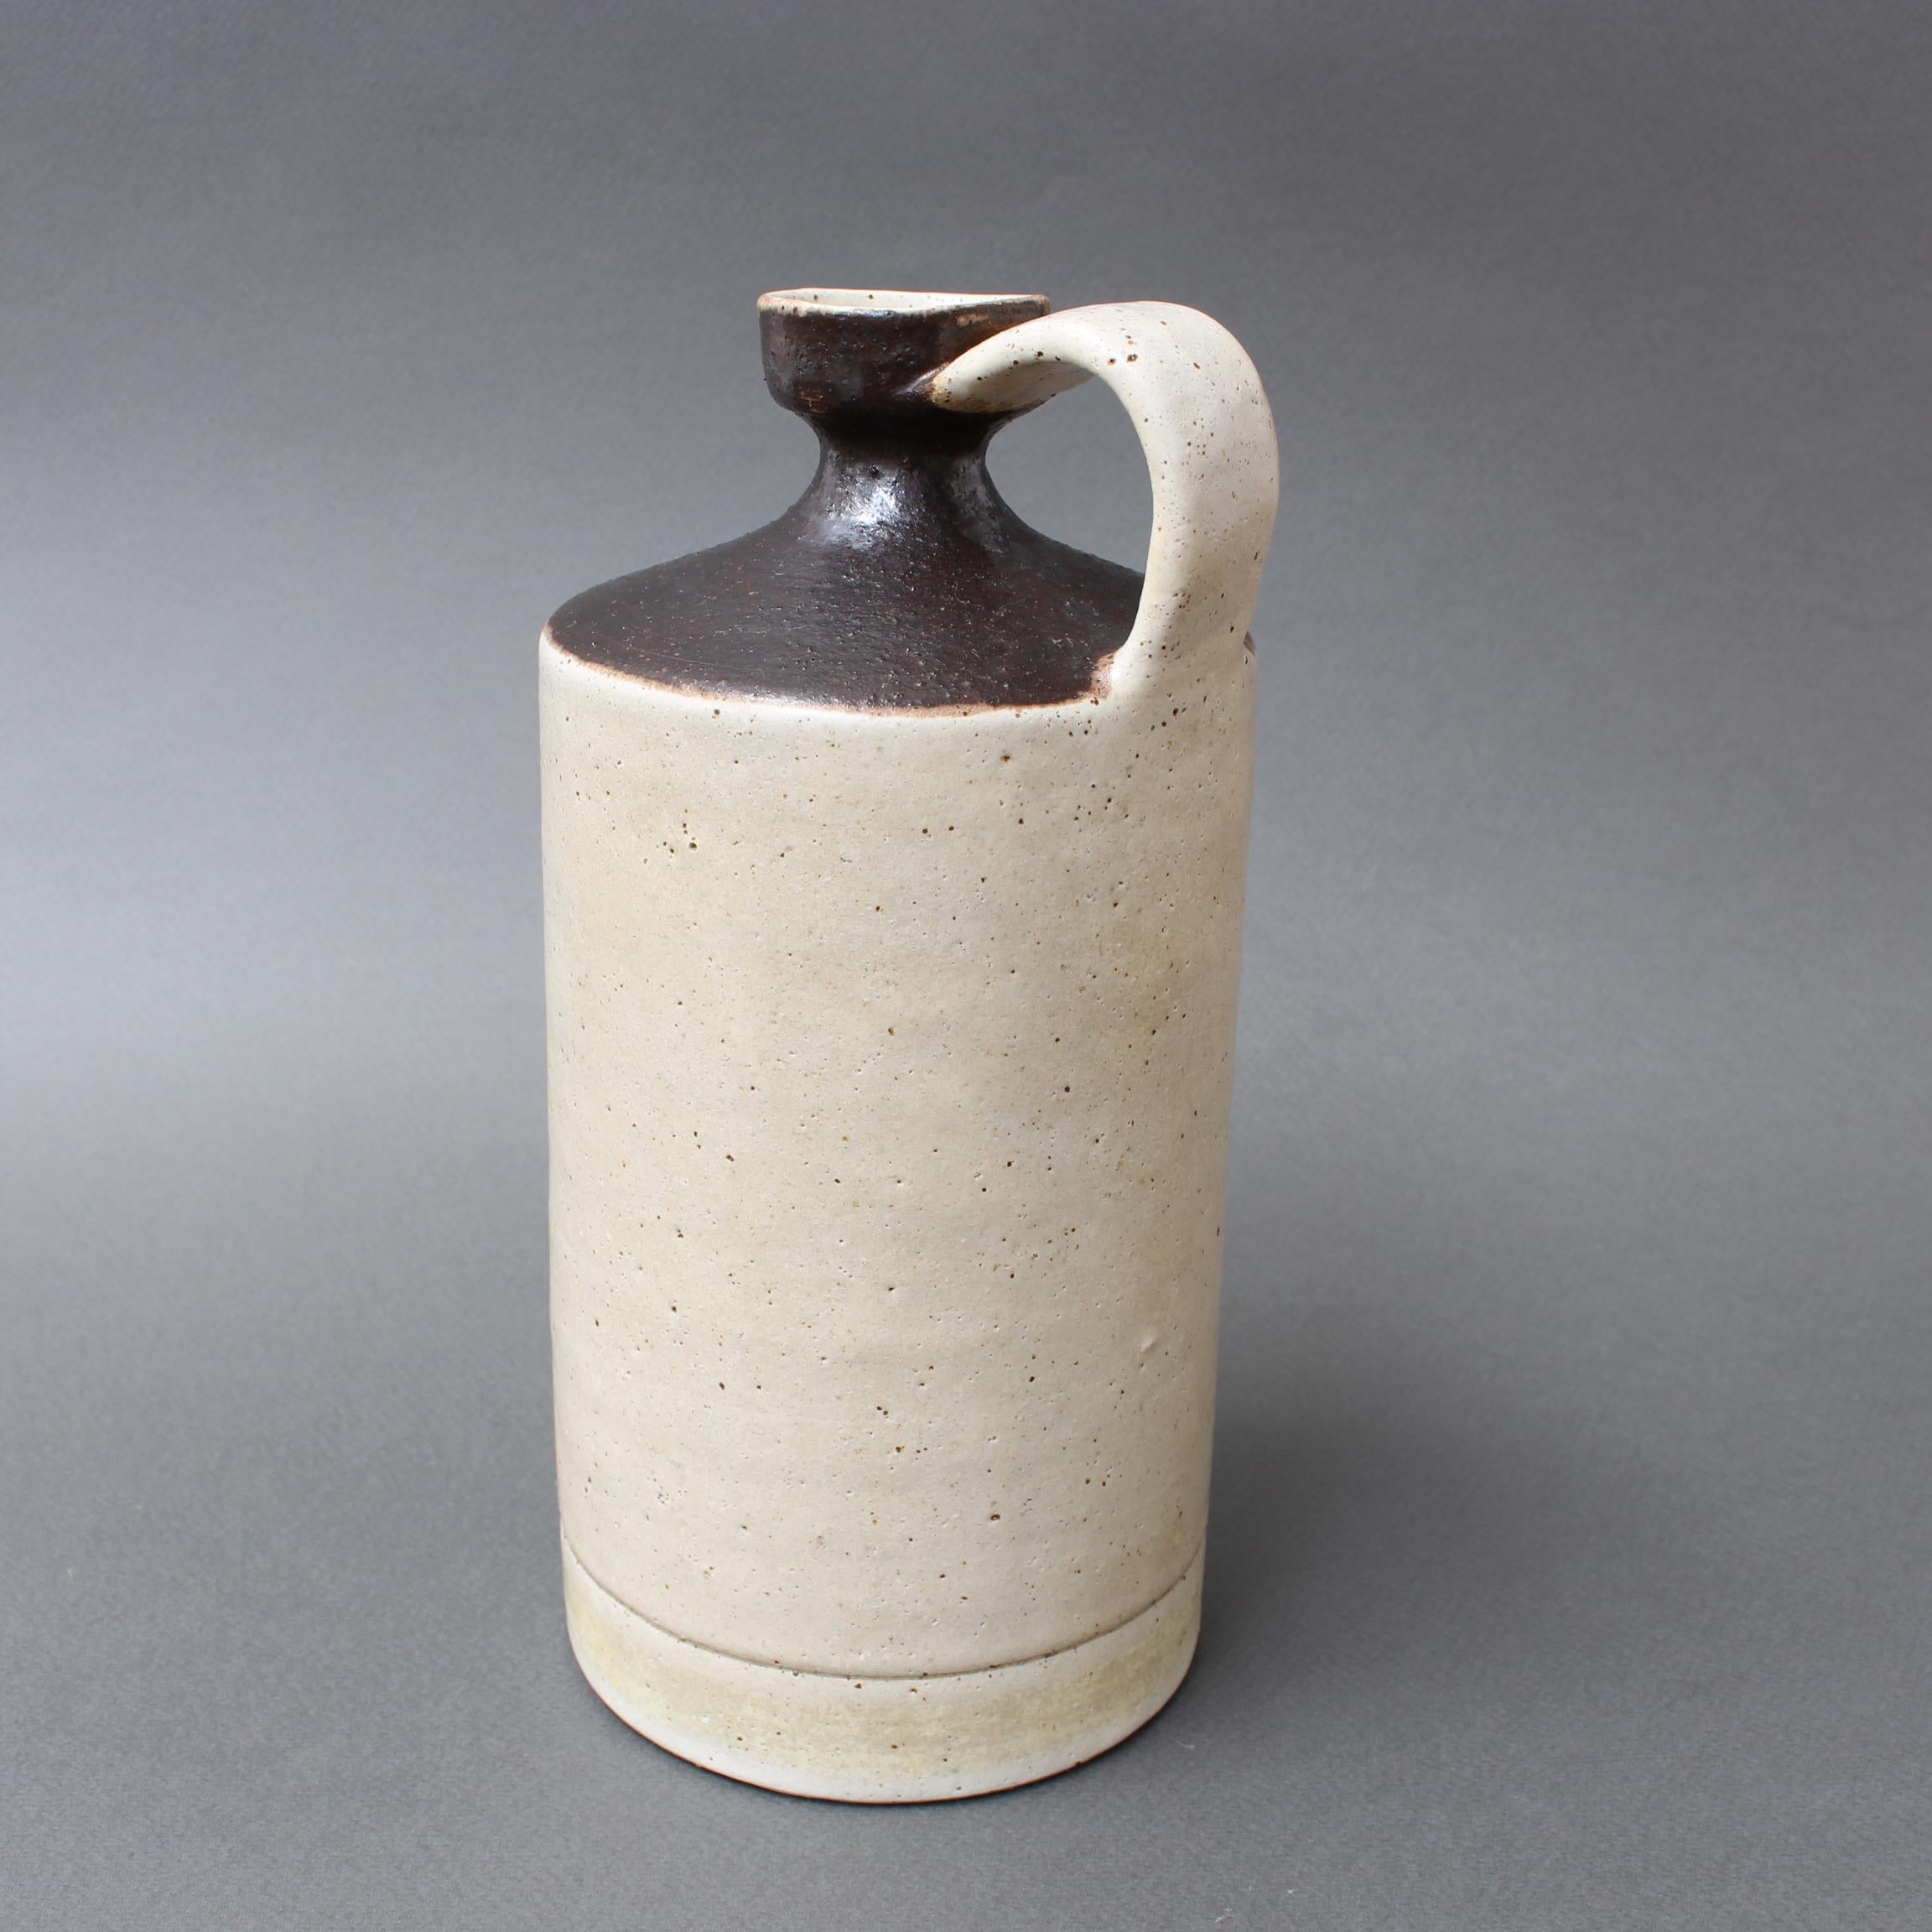 Italienischer Keramikkrug / Vase von Bruno Gambone (ca. 1970er Jahre). Wie unsere anderen Gefäße von Bruno Gambone hat auch dieses eine reine Form, einen gedeckten Farbton und eine demonstrative, mühelose Schönheit, wie sie nur von Bruno Gambone